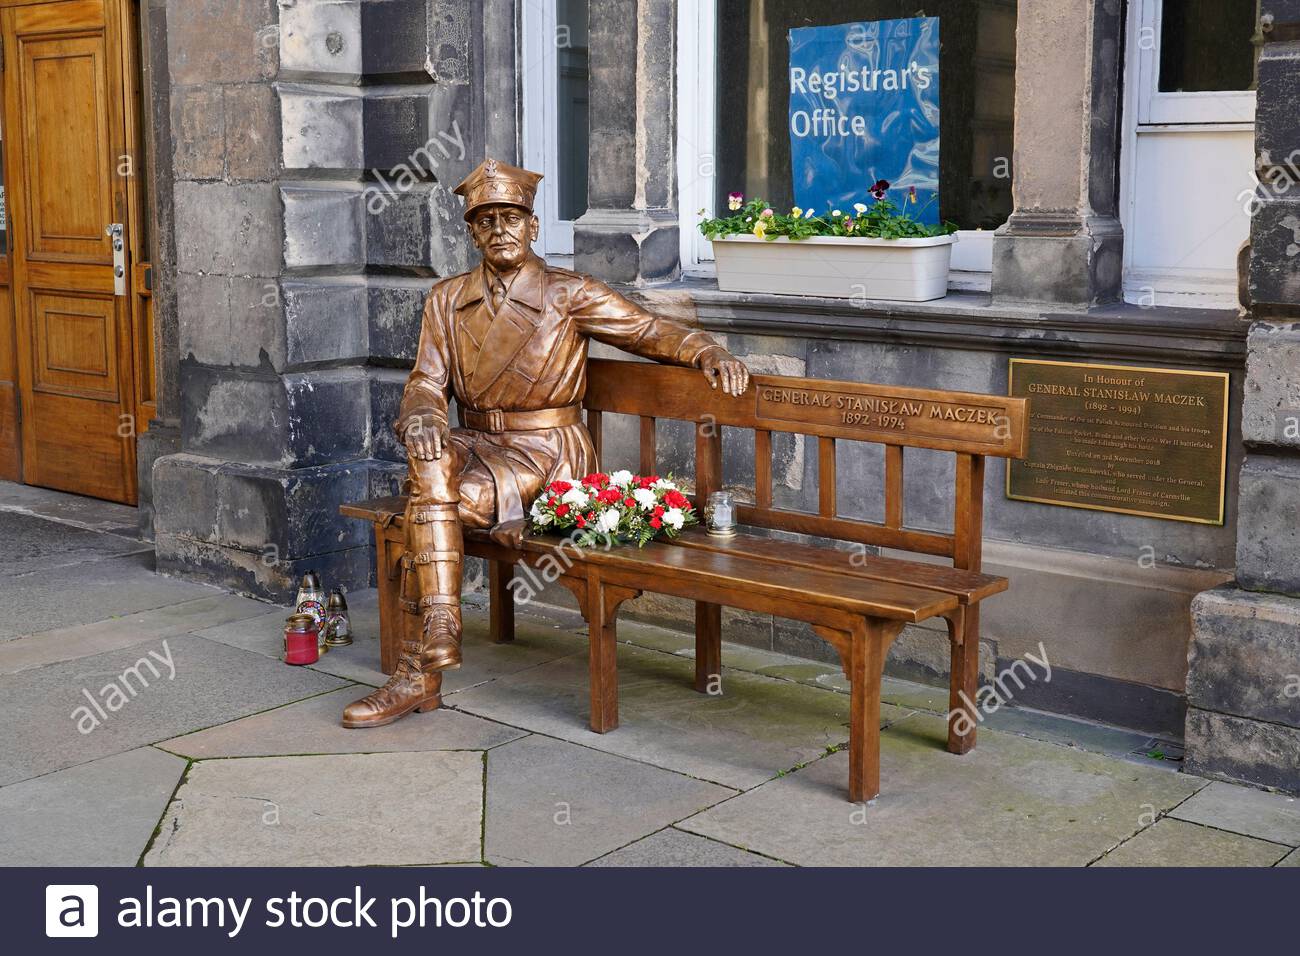 General Stanisław Maczek, 1892 – 1994, war ein polnischer Panzerkommandeur während des Zweiten Weltkriegs, Gedenkstätte an den City Chambers, Edinburgh. Vorgestellt im Jahr 2018. Stockfoto